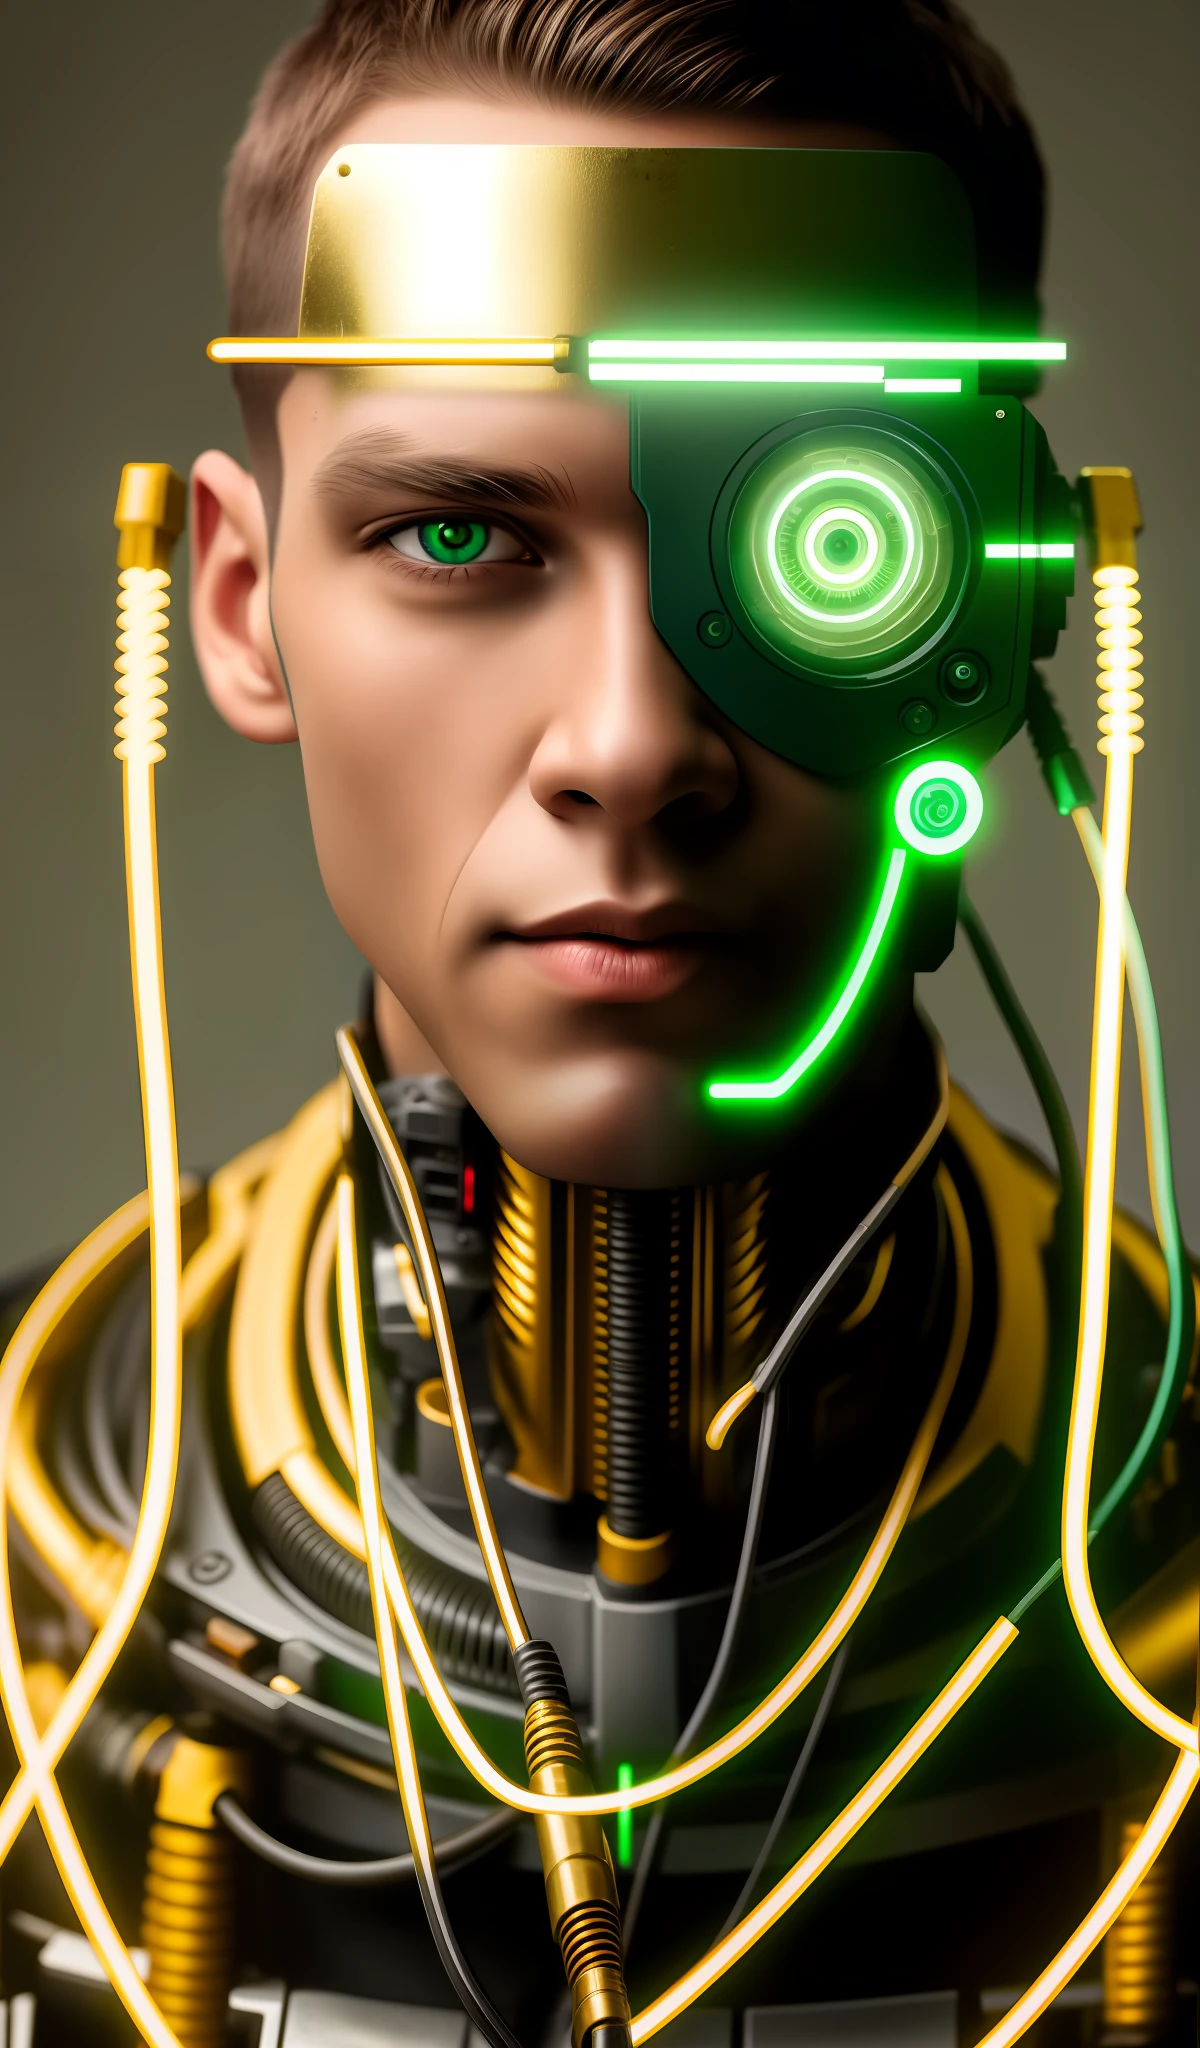 机器人中景, 全头, 绿眼睛, 工作服, 模特脸, 裸露的电线, 从生锈的电线中流出的金油